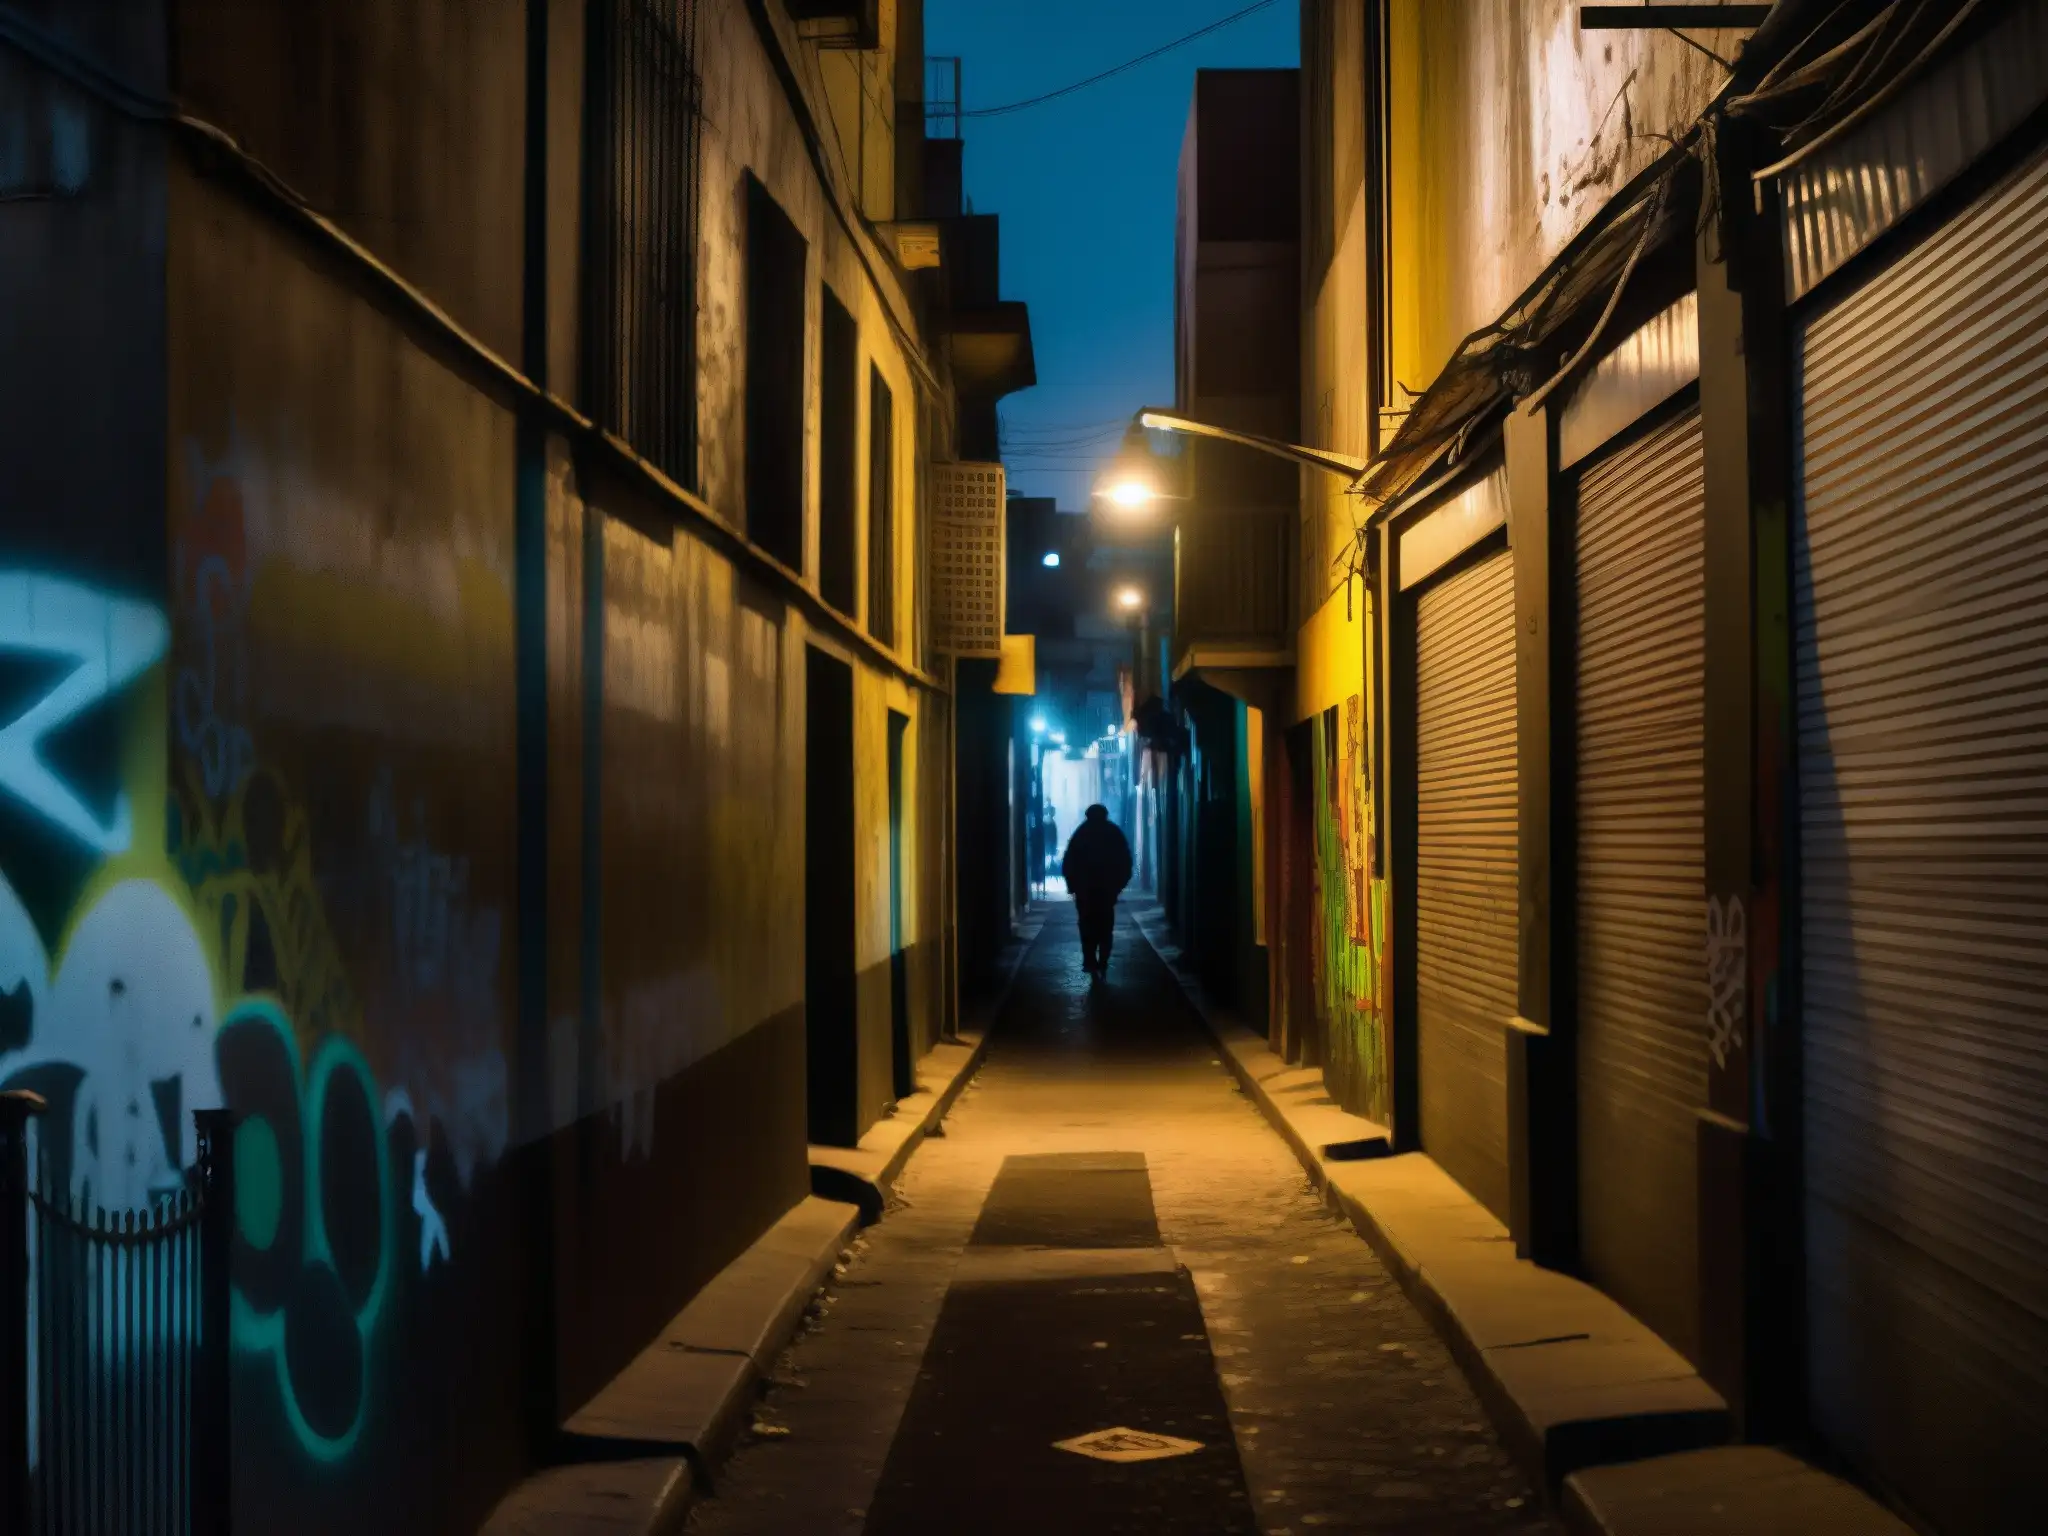 Un callejón oscuro y misterioso en una bulliciosa ciudad latinoamericana, con figuras en las sombras